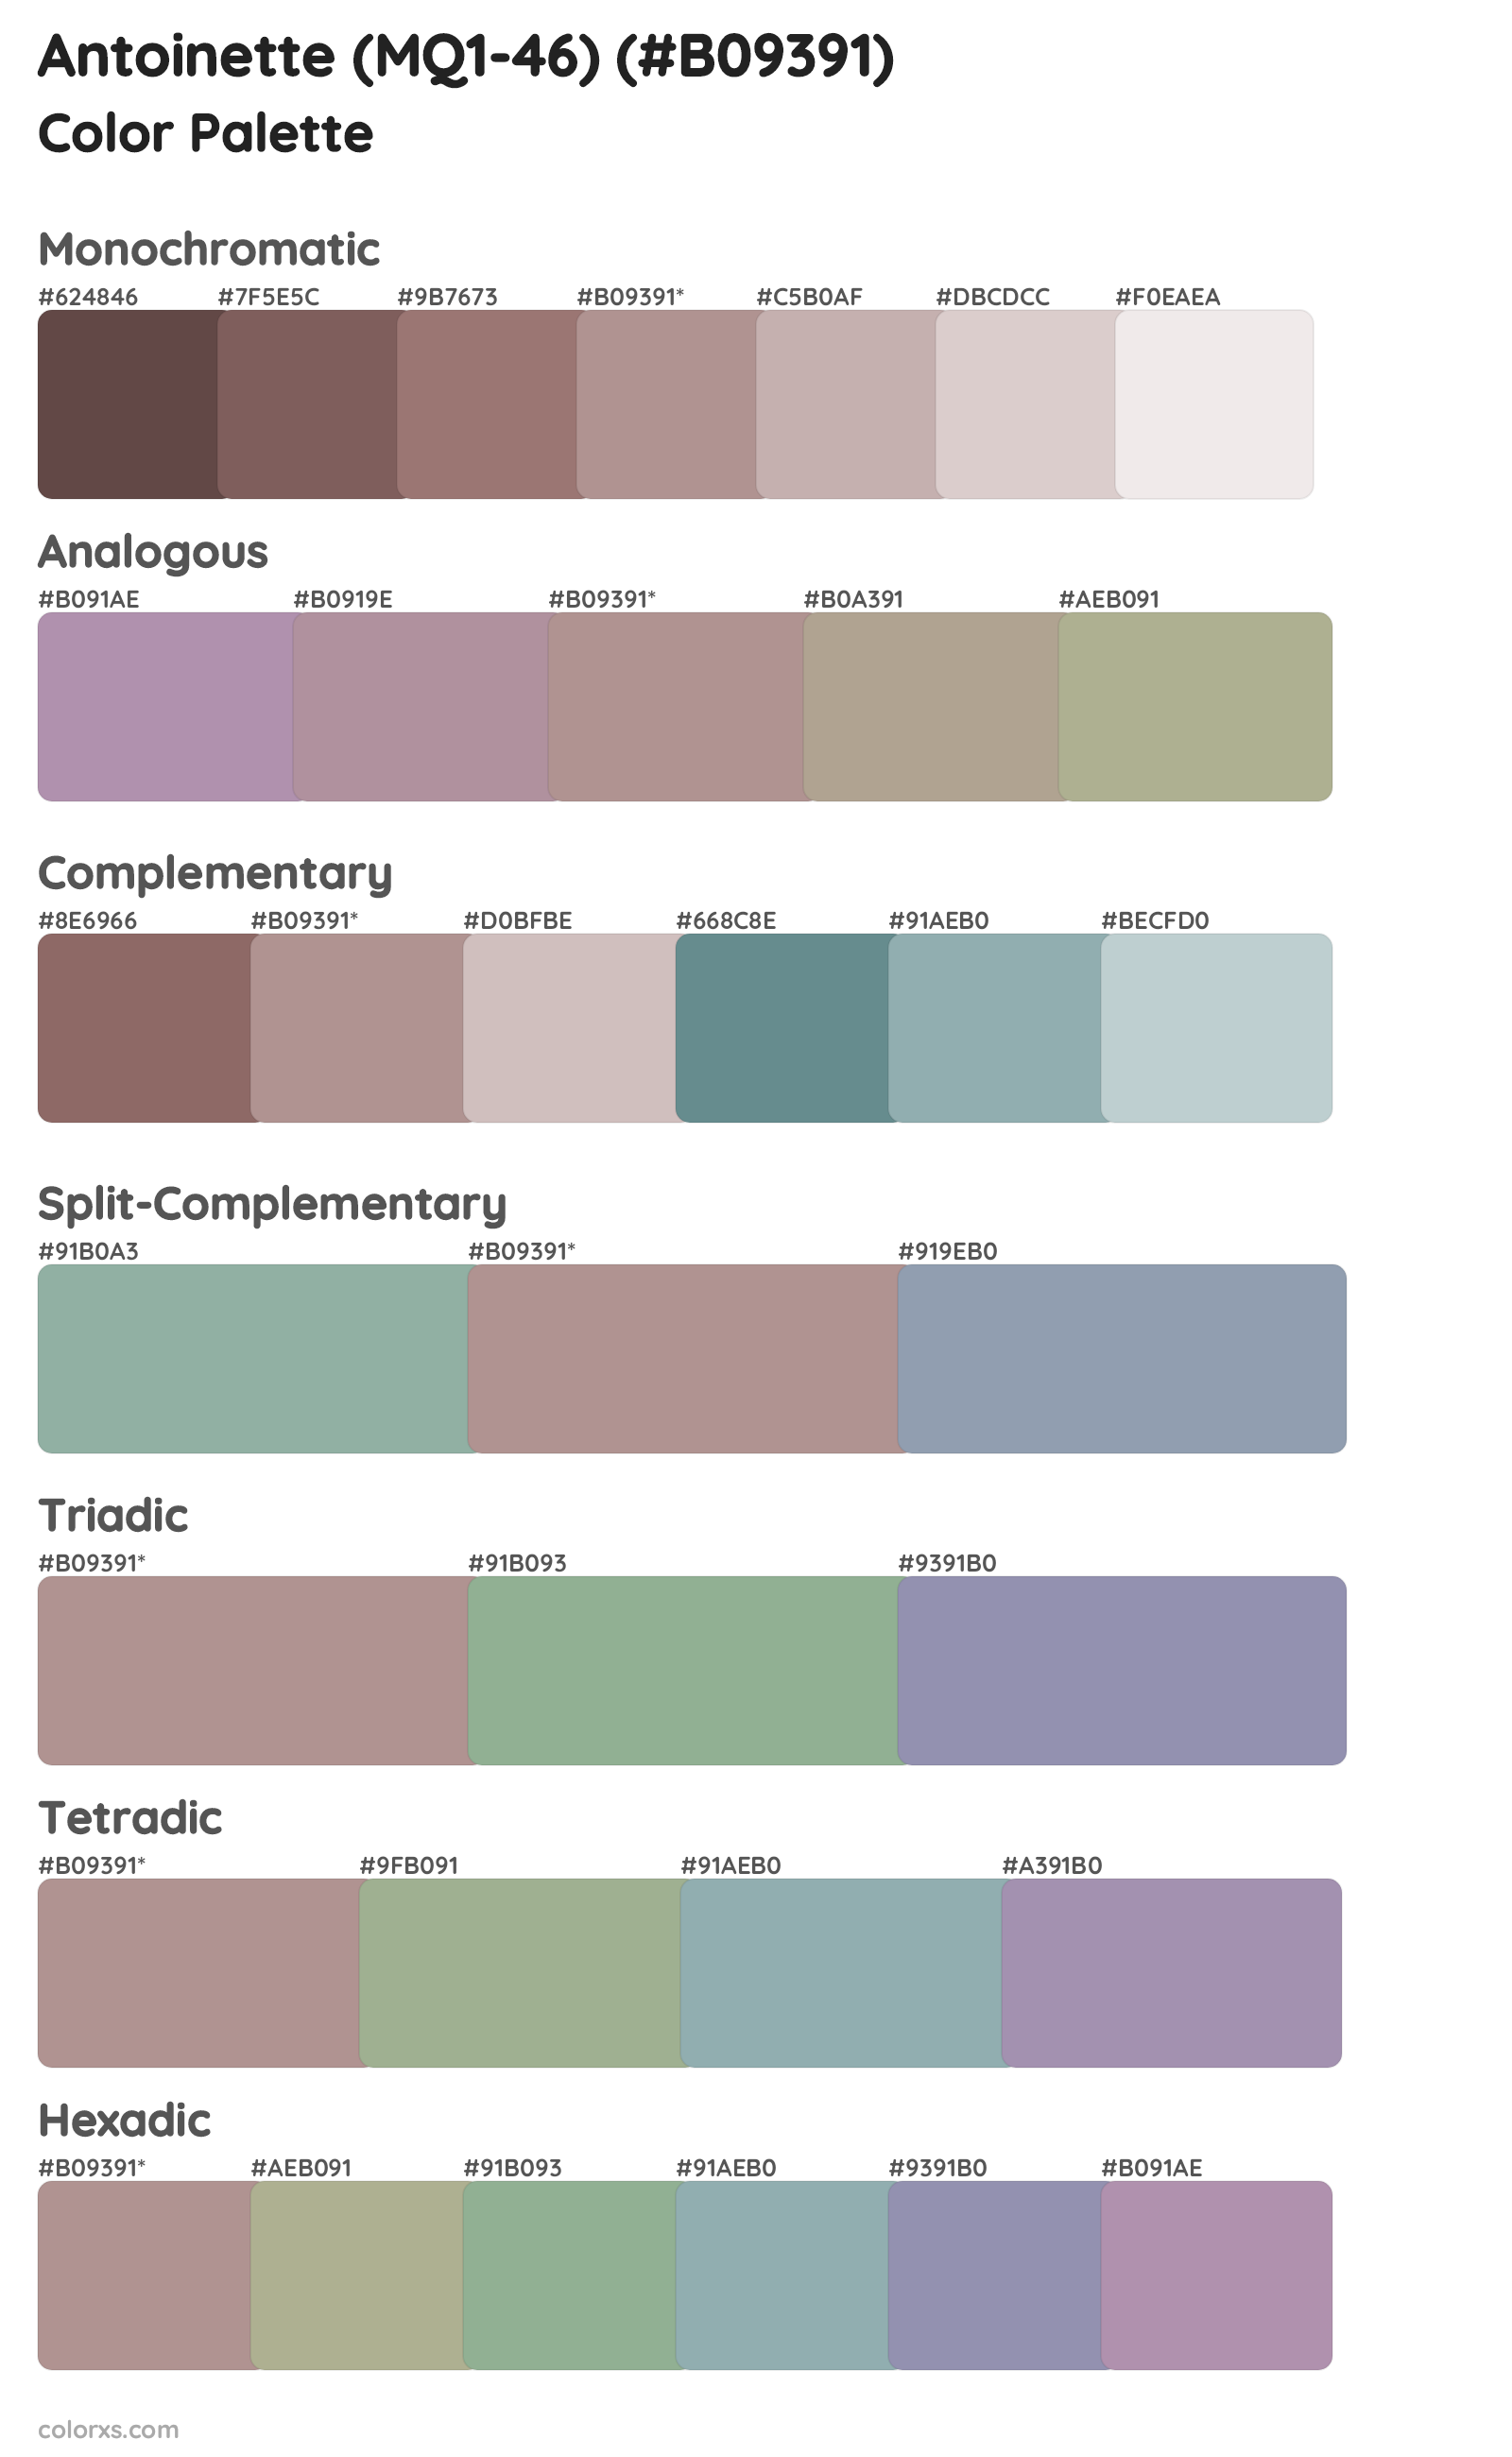 Antoinette (MQ1-46) Color Scheme Palettes